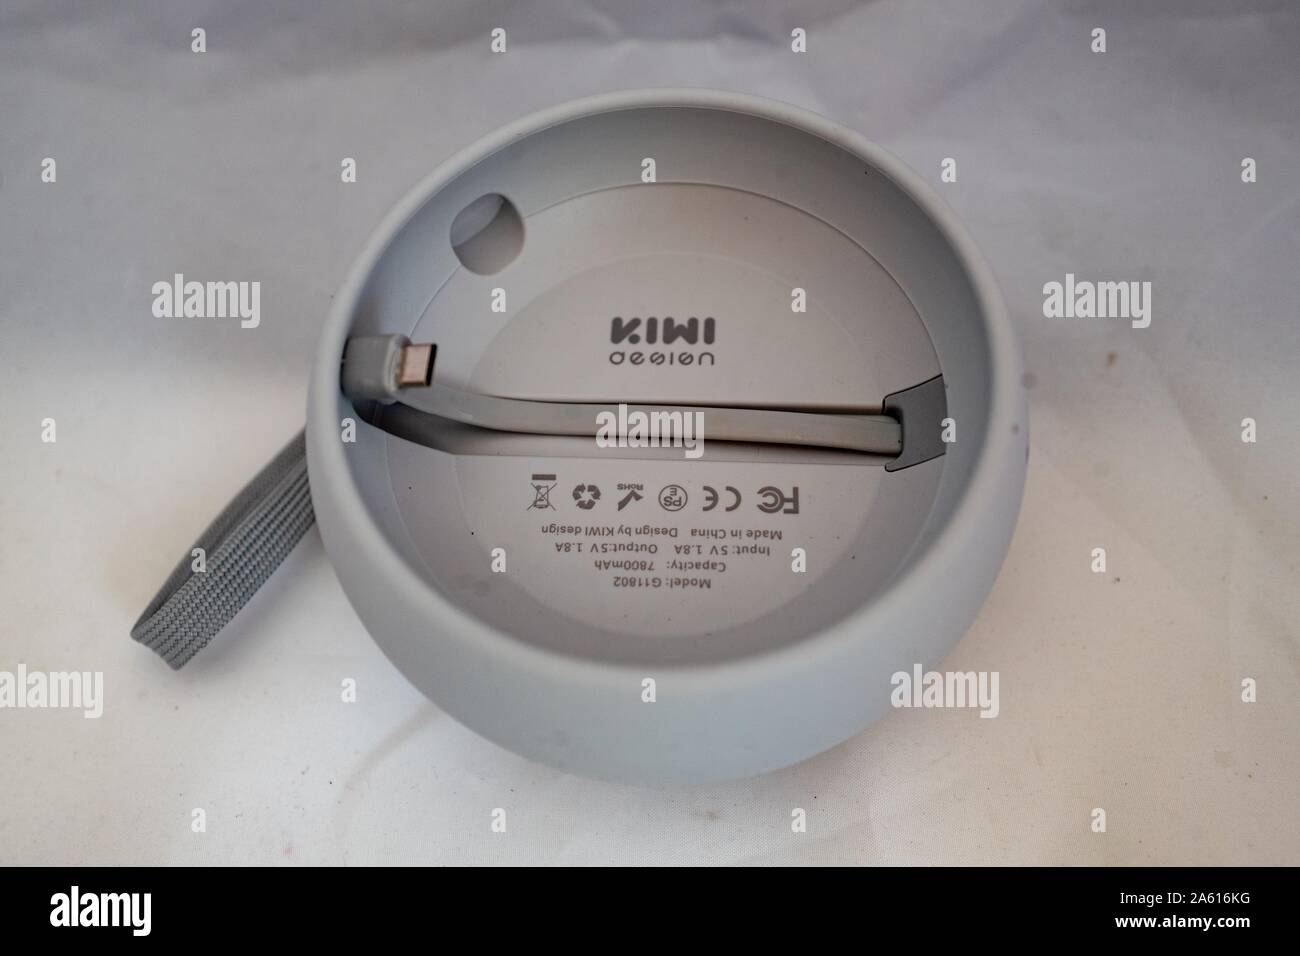 Primer plano de la base de batería portátil Kiwi Design para el altavoz  inteligente Google Home Mini sobre fondo blanco, 27 de agosto de 2019  Fotografía de stock - Alamy